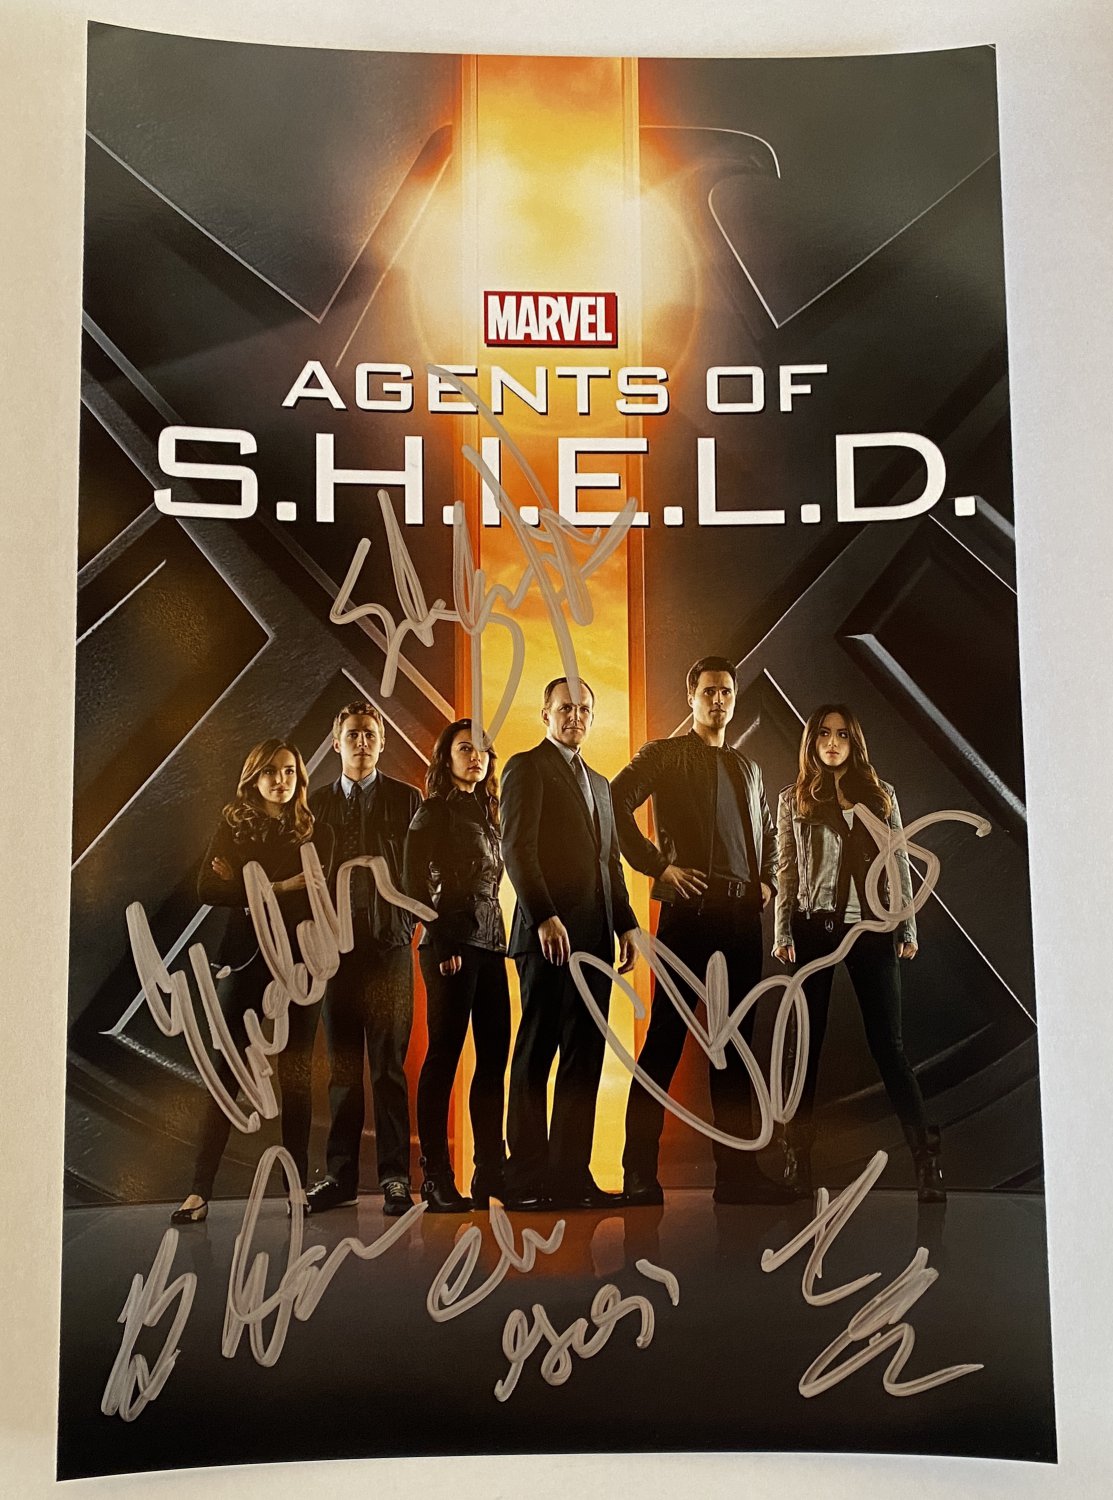 Agents of Shield cast signed autographed 8x12 photo photograph Clark Gregg autographs S.H.I.E.L.D.